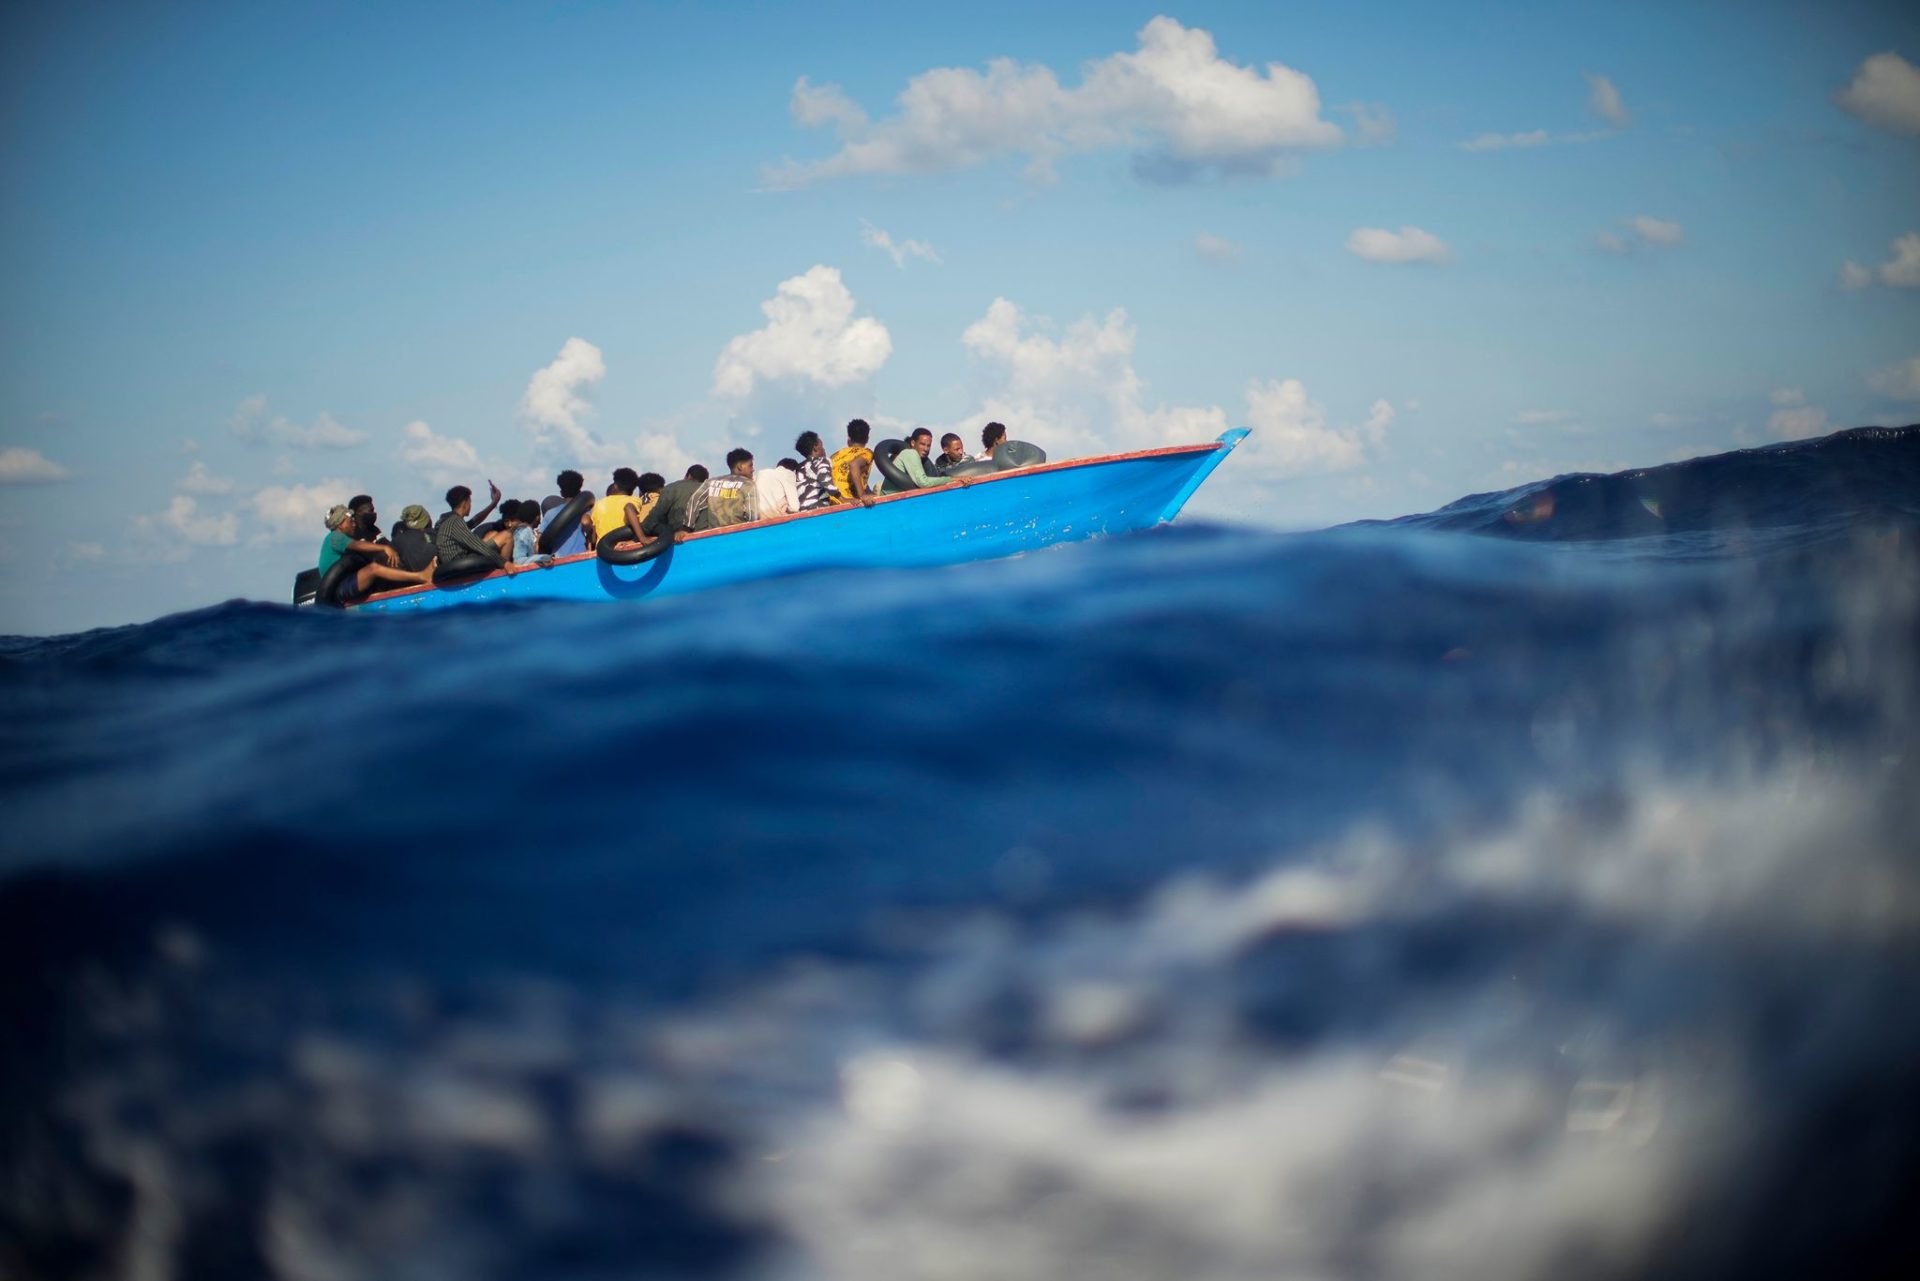 Migranten sitzen in einem Holzboot südlich der italienischen Insel Lampedusa auf dem Mittelmeer. (zu dpa "Krisentreffen zu Migration: EU-Kommission fordert mehr Zusammenarbeit")